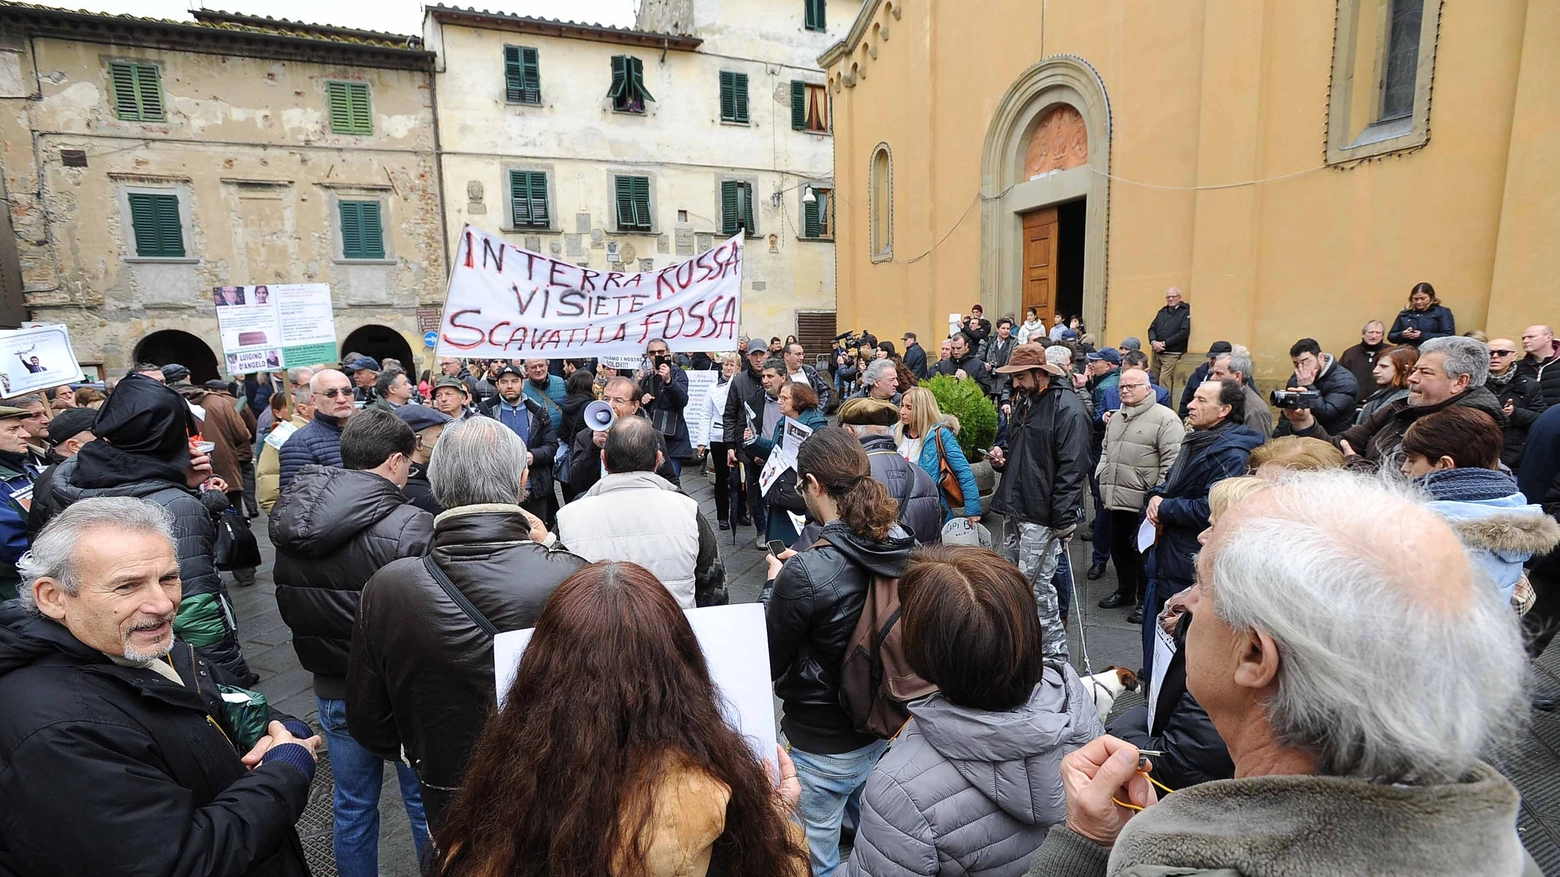 La protesta a Laterina